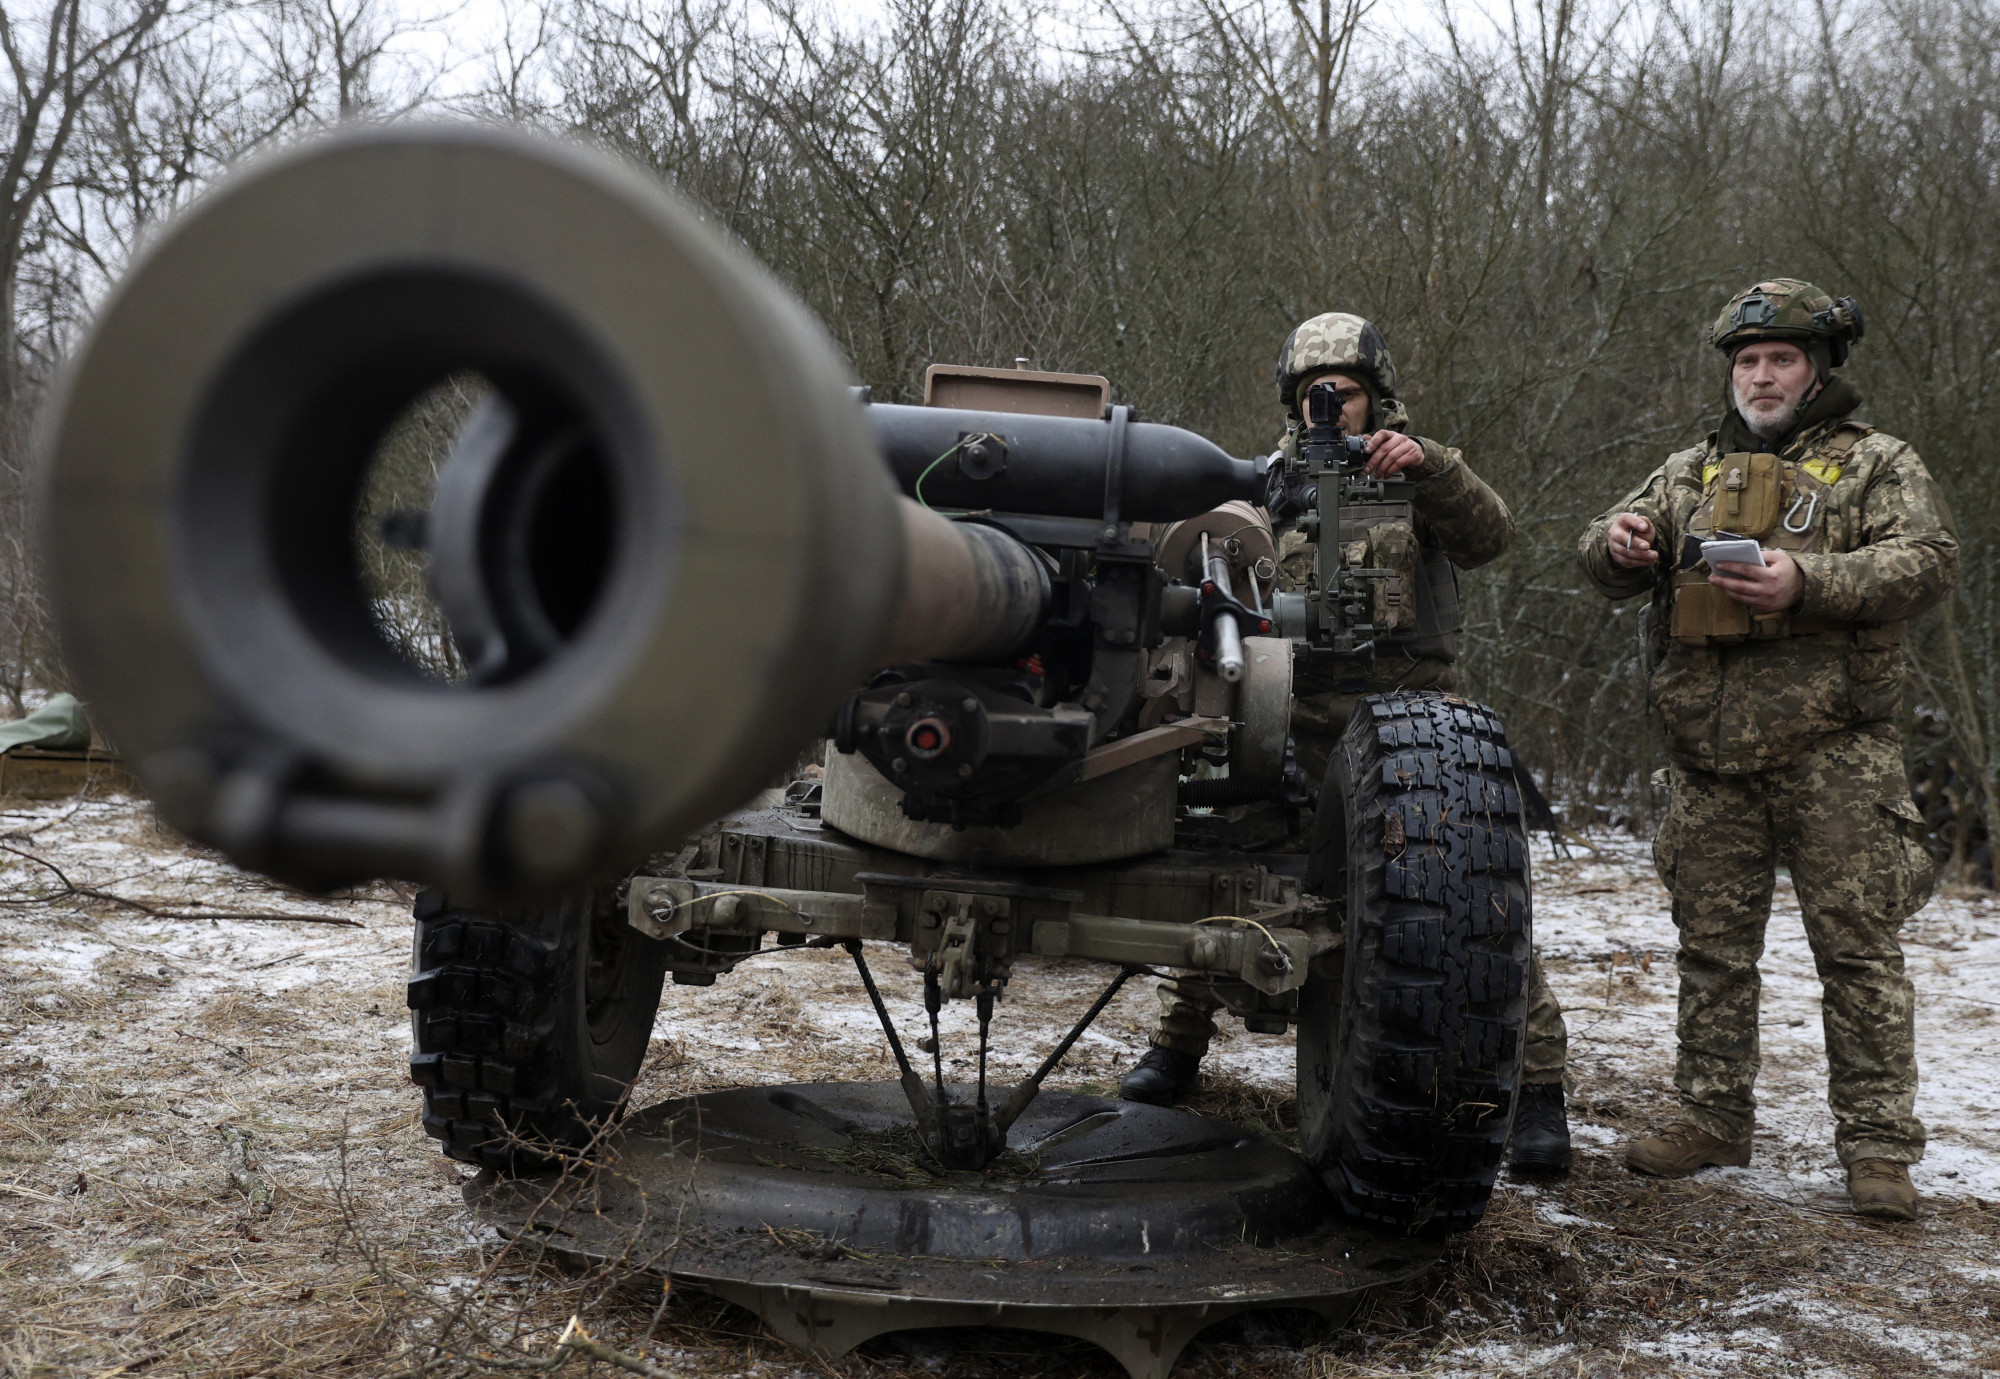 Február 23. az orosz hadsereg szent dátuma, ezért is tart az ukrán vezetés az inváziótól